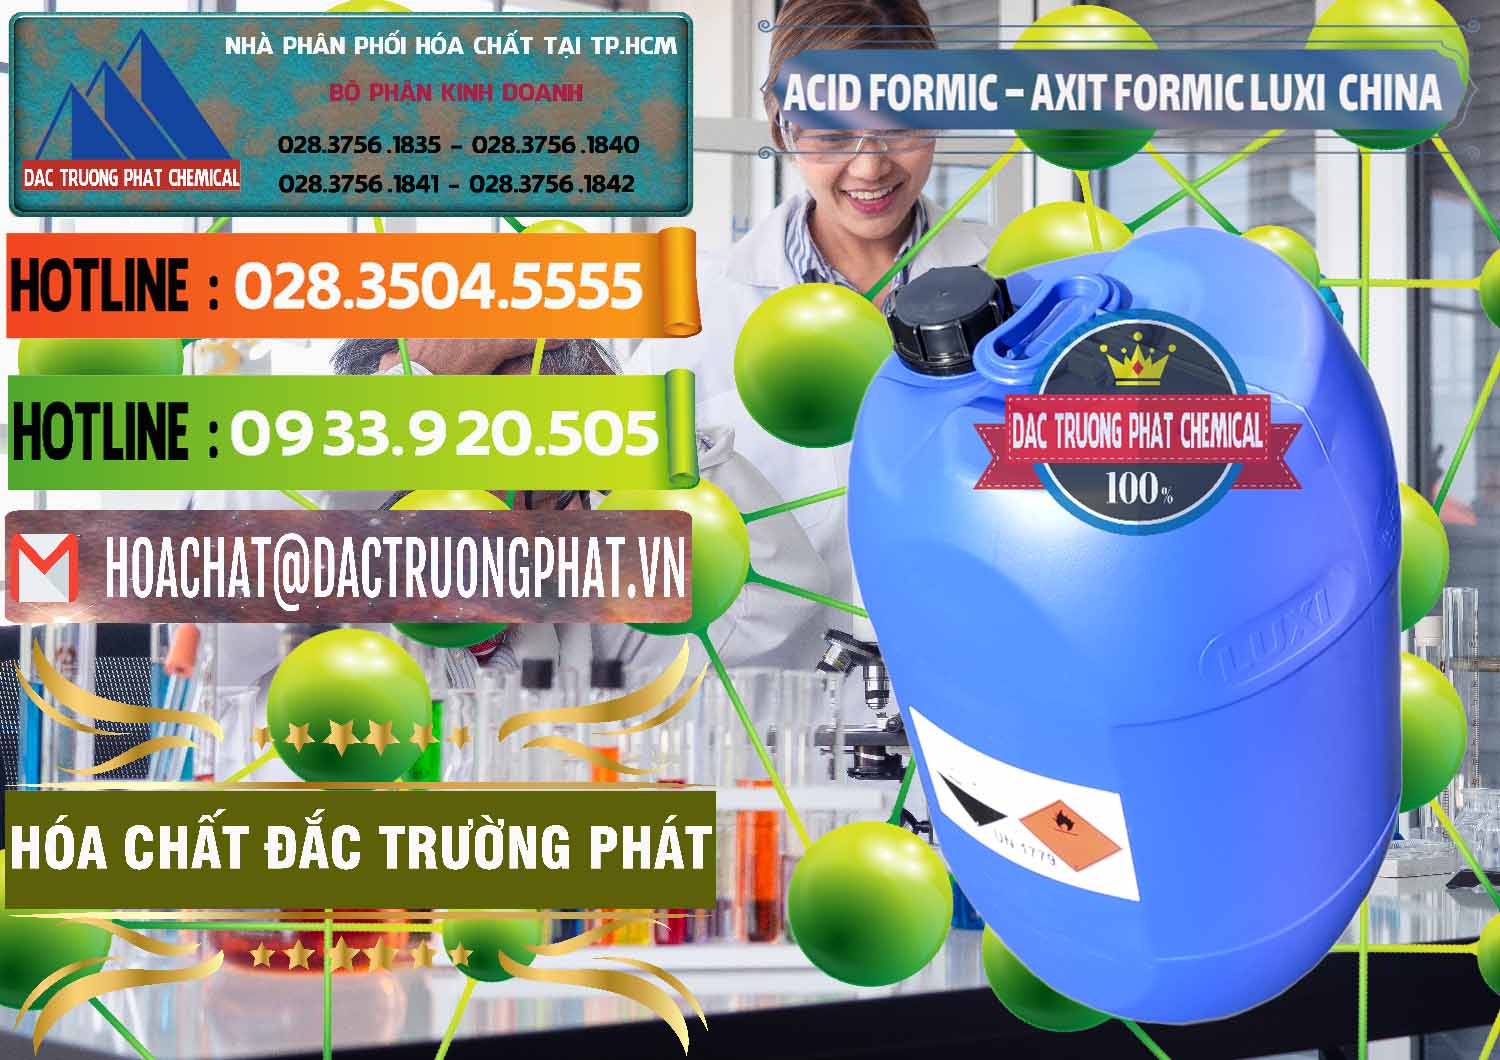 Đơn vị chuyên phân phối & bán Acid Formic - Axit Formic Luxi Trung Quốc China - 0029 - Công ty cung cấp và bán hóa chất tại TP.HCM - cungcaphoachat.com.vn